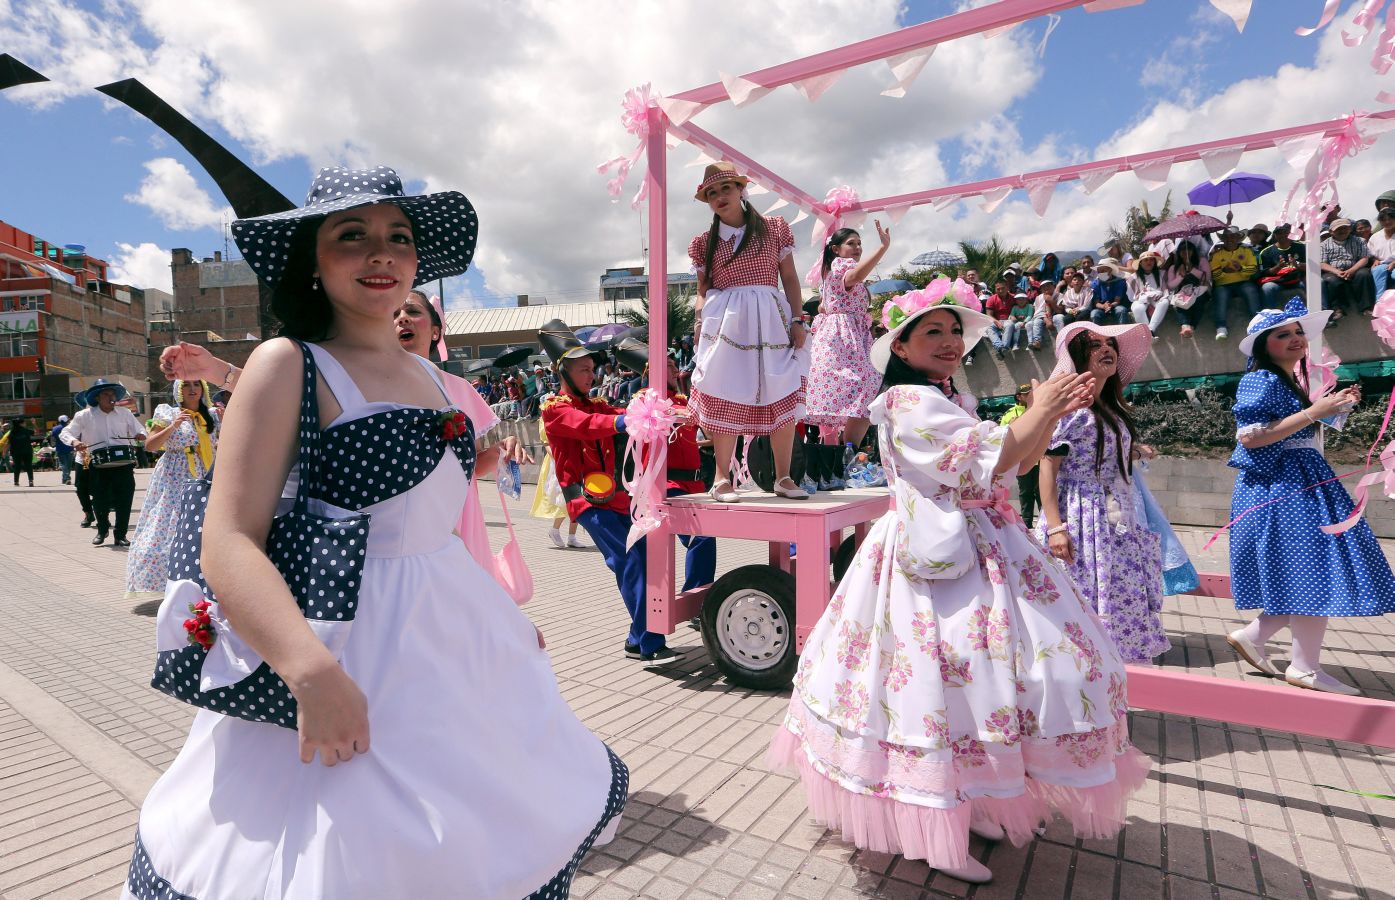 El Carnaval de Negros y Blancos inunda de color, alegría y bailes las calles de la localidad colombiana de Pasto